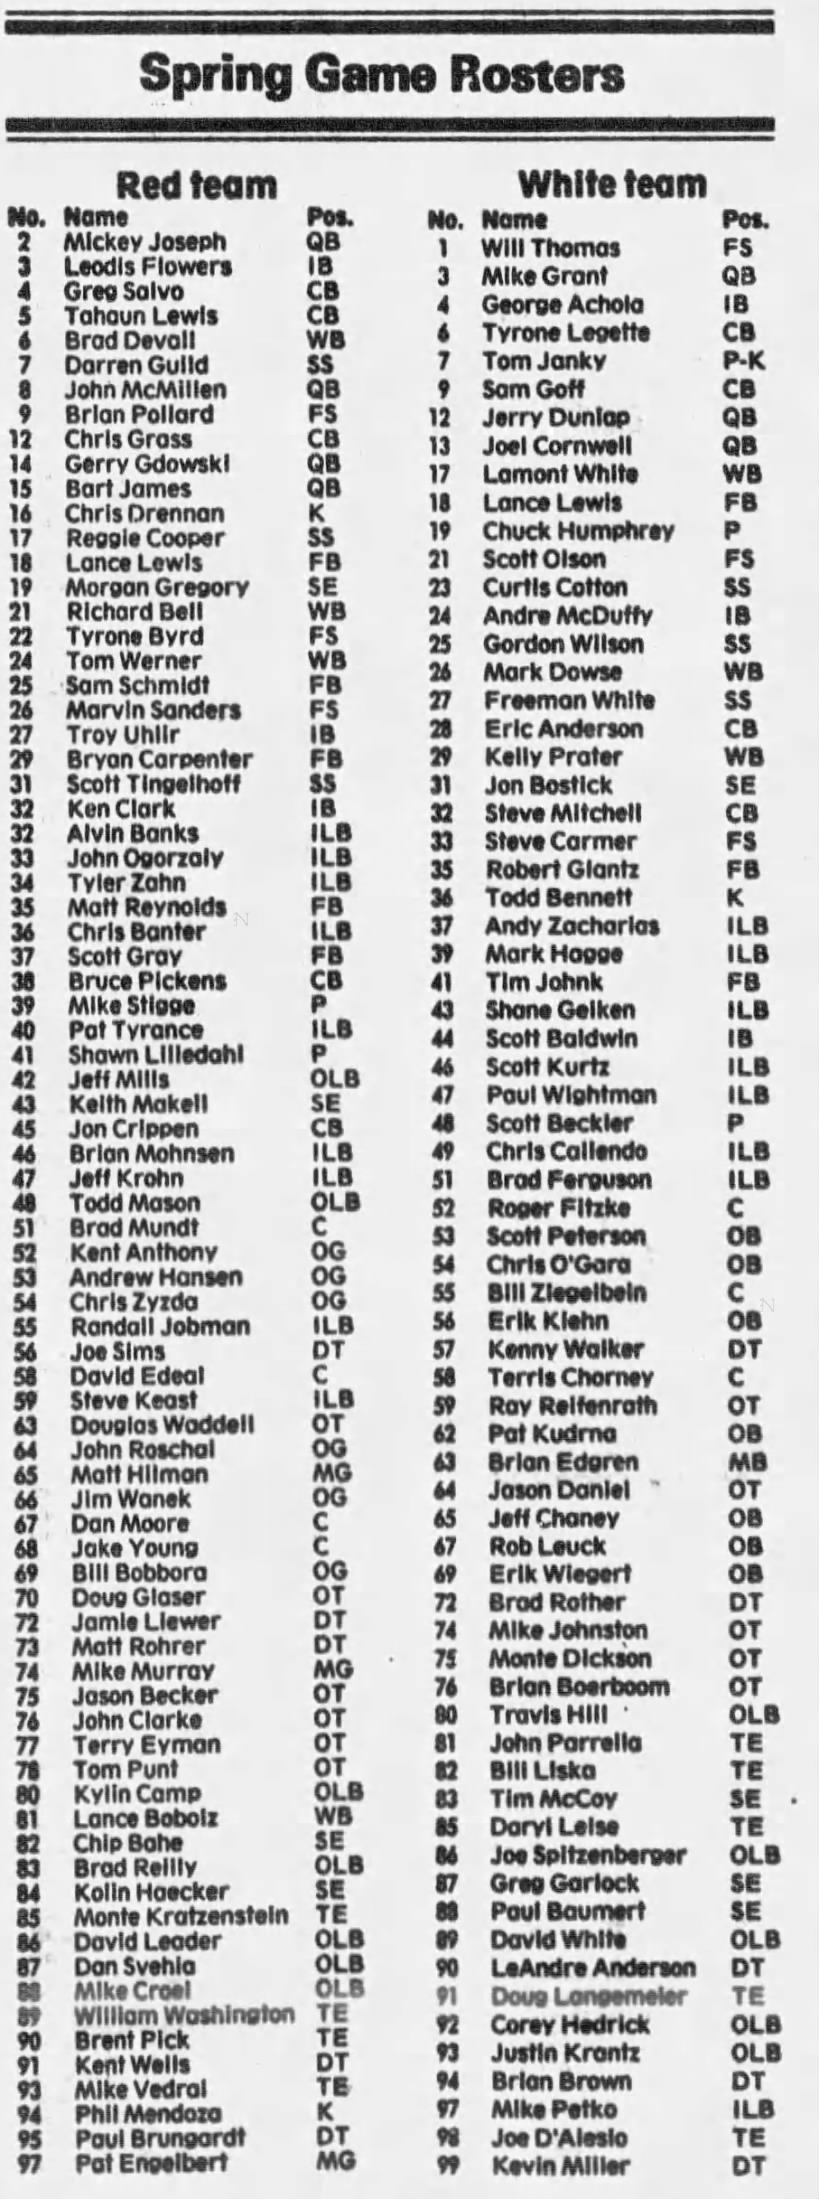 1989 Nebraska spring game rosters